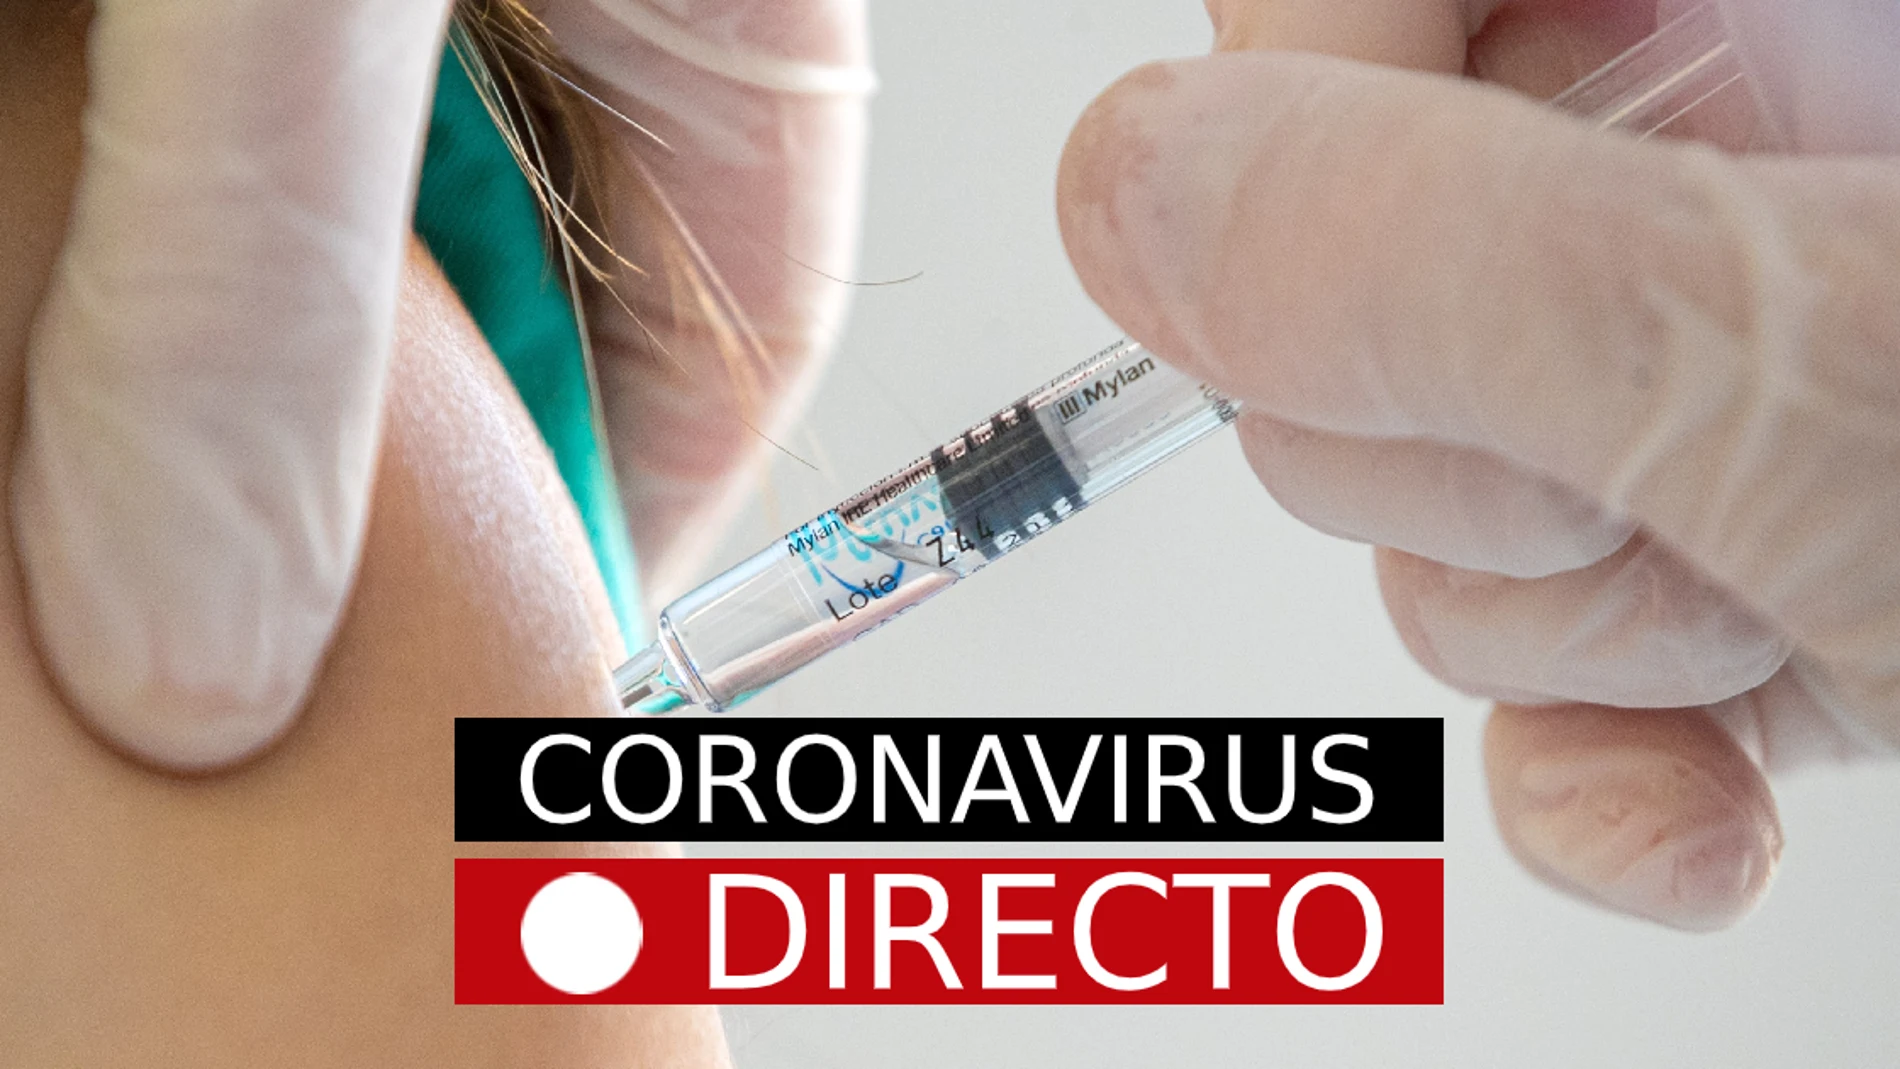 Última Hora de Coronavirus en España, en directo: Ómicron, pasaporte COVID e incidencia, hoy